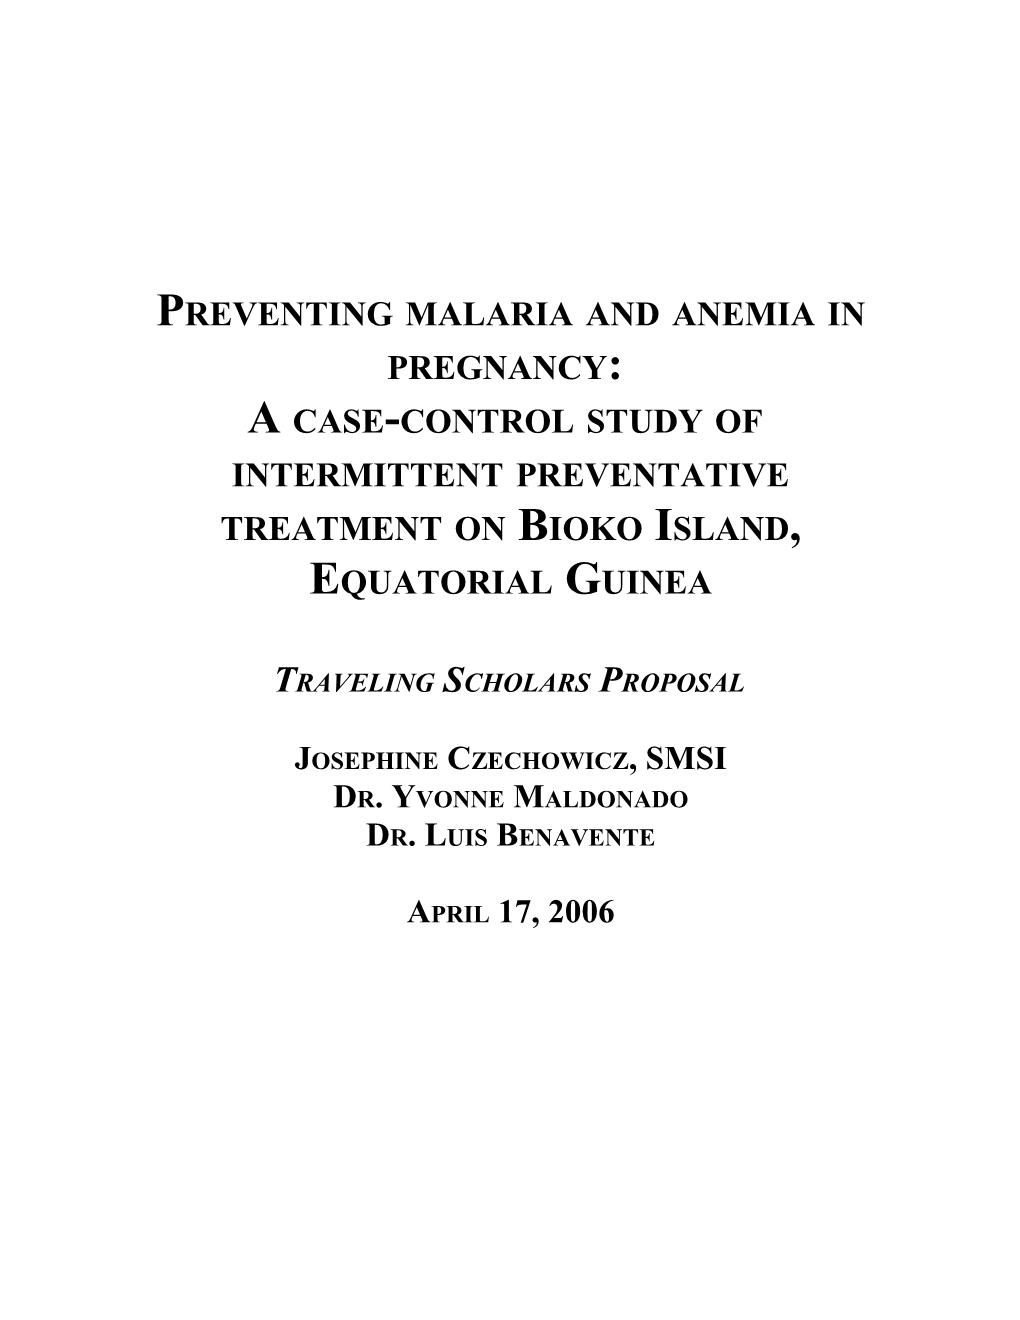 Preventing Malaria and Anemia in Pregnancy